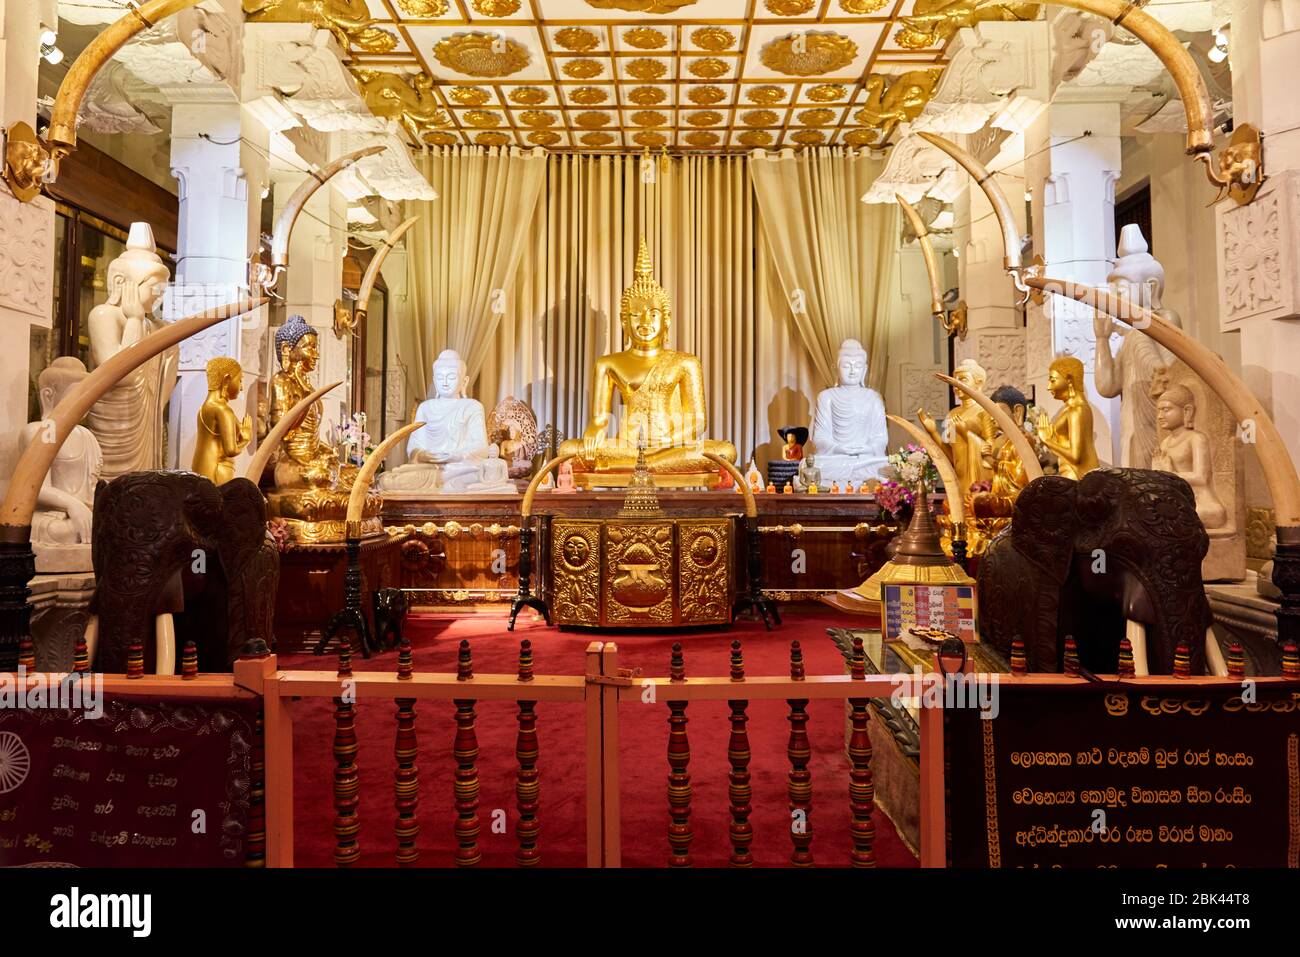 Uno dei principali santuari del Tempio Relico del dente Sacro a Kandy, Sri Lanka, che contiene diverse statue di Buddha, crociati d'avorio e statue di elefanti. Foto Stock